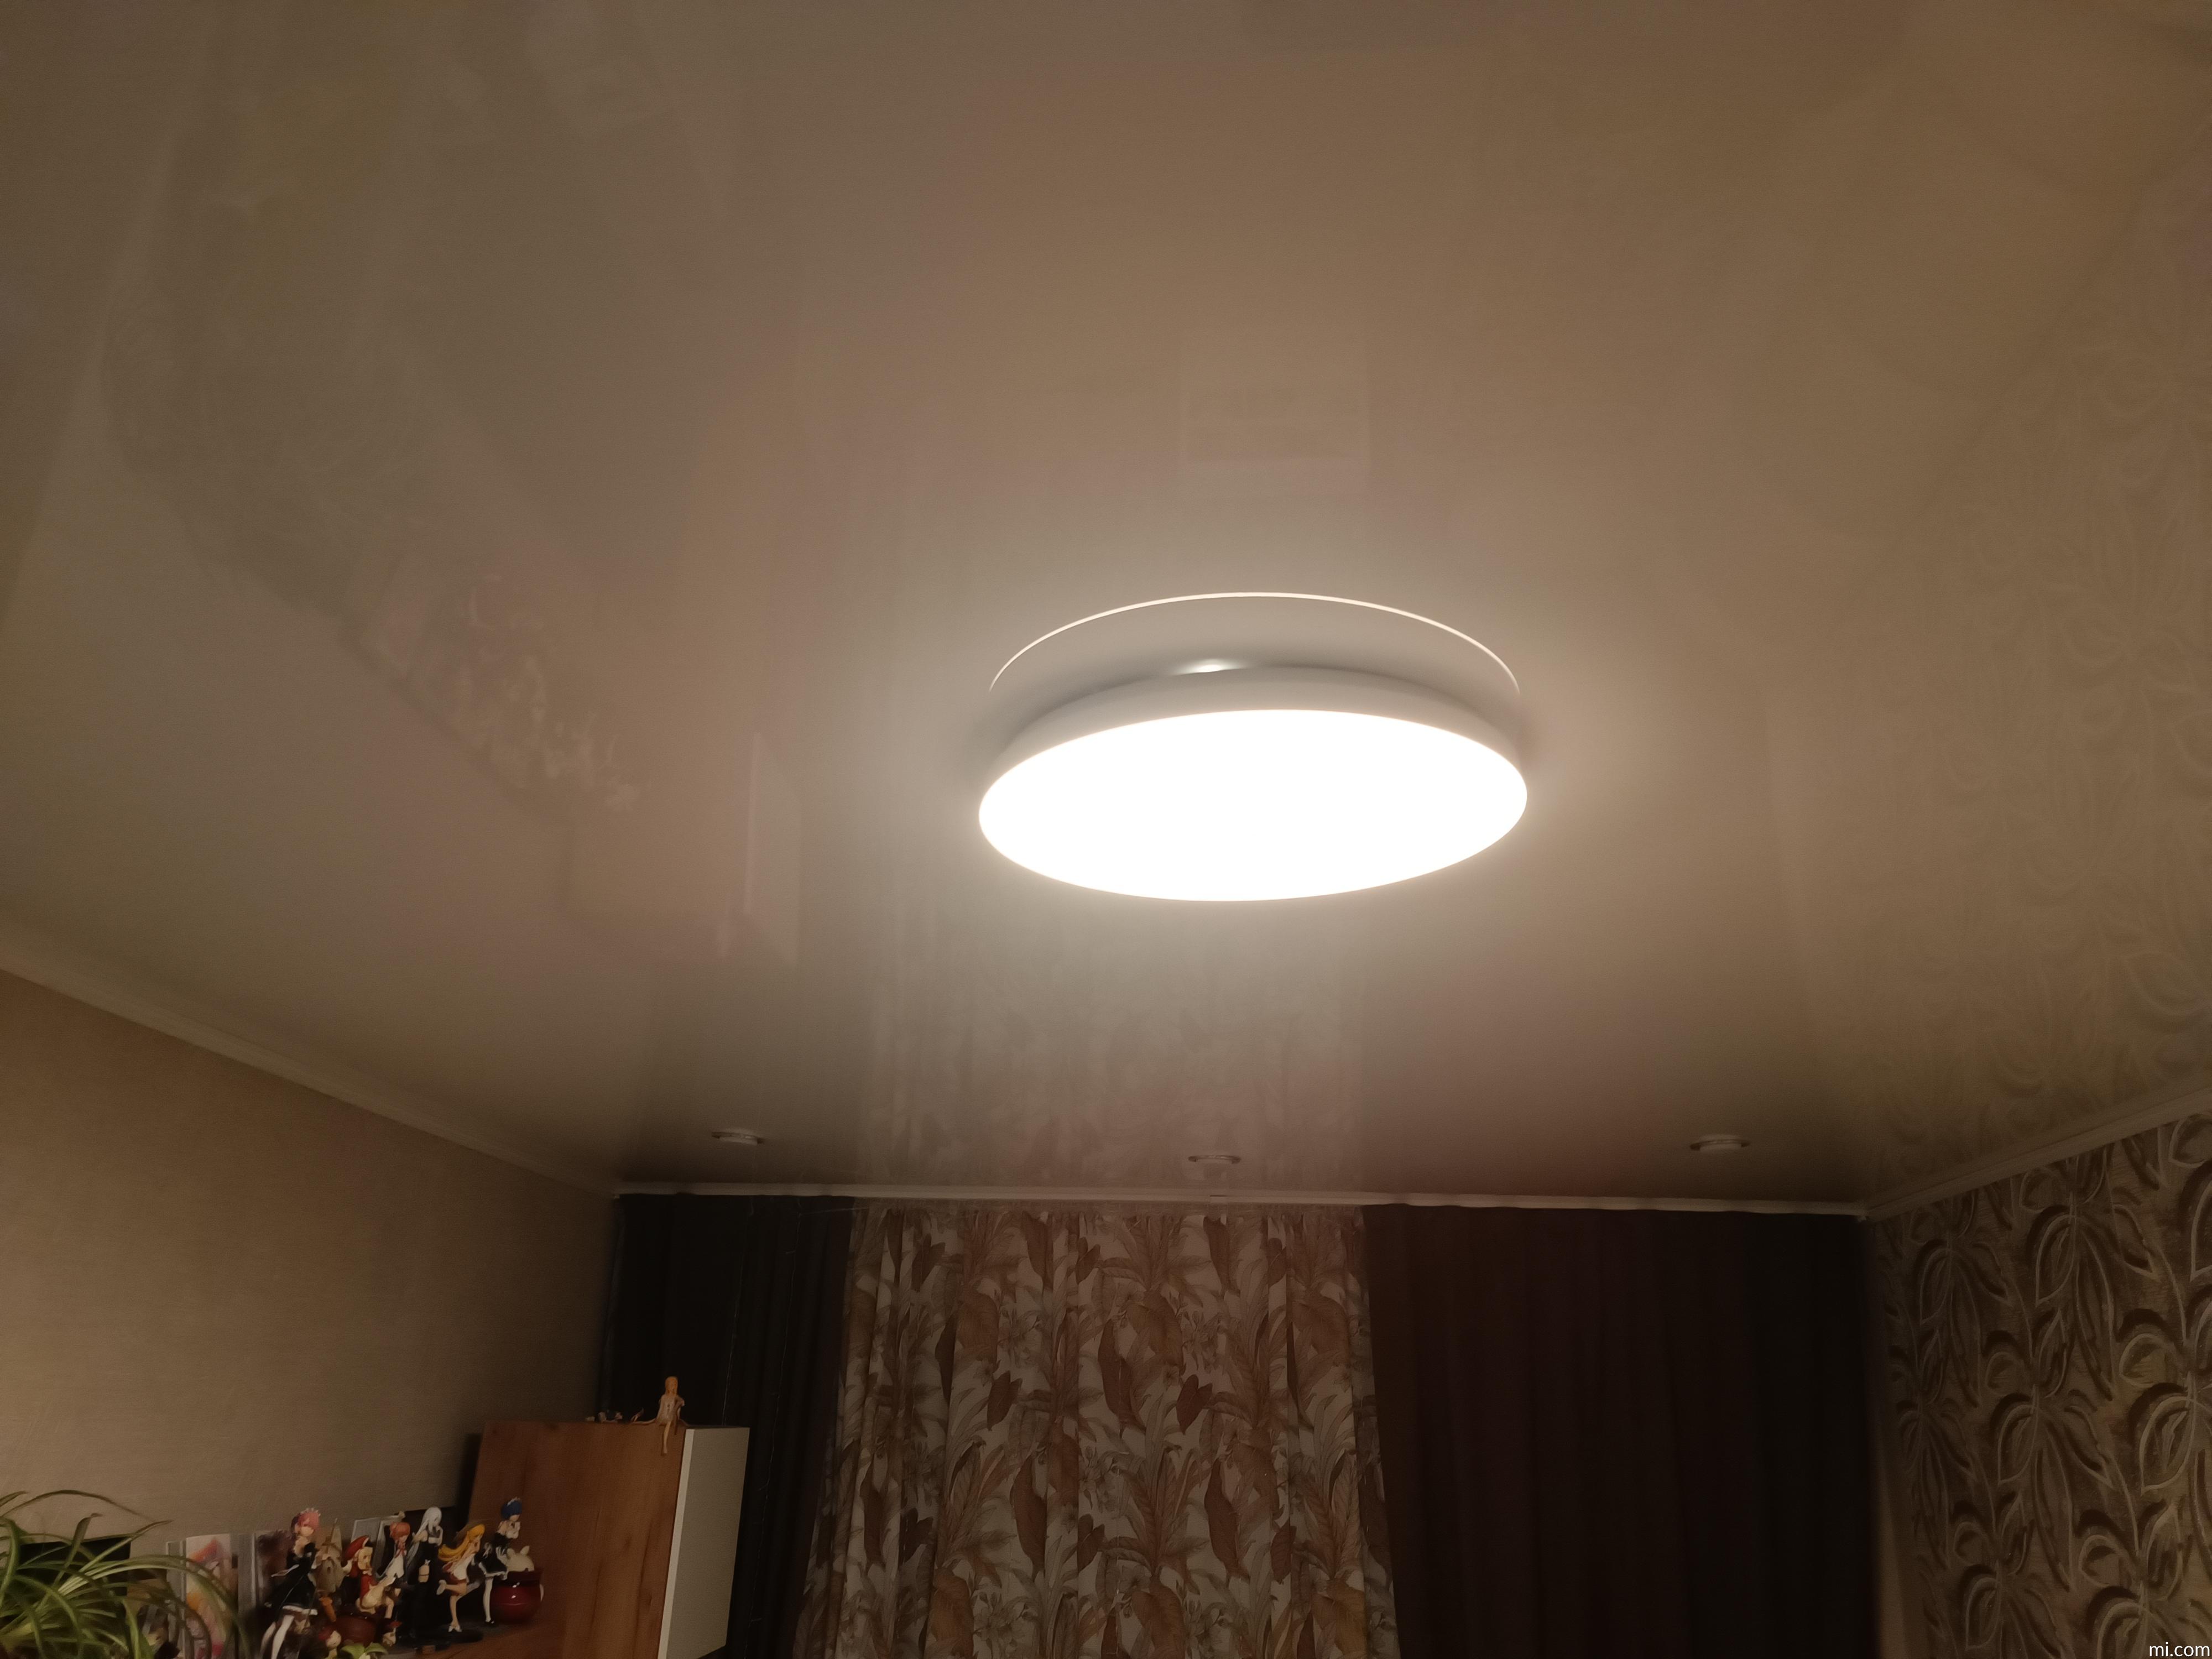 Потолочный светильник Mi LED Ceiling Light | Xiaomi Россия -